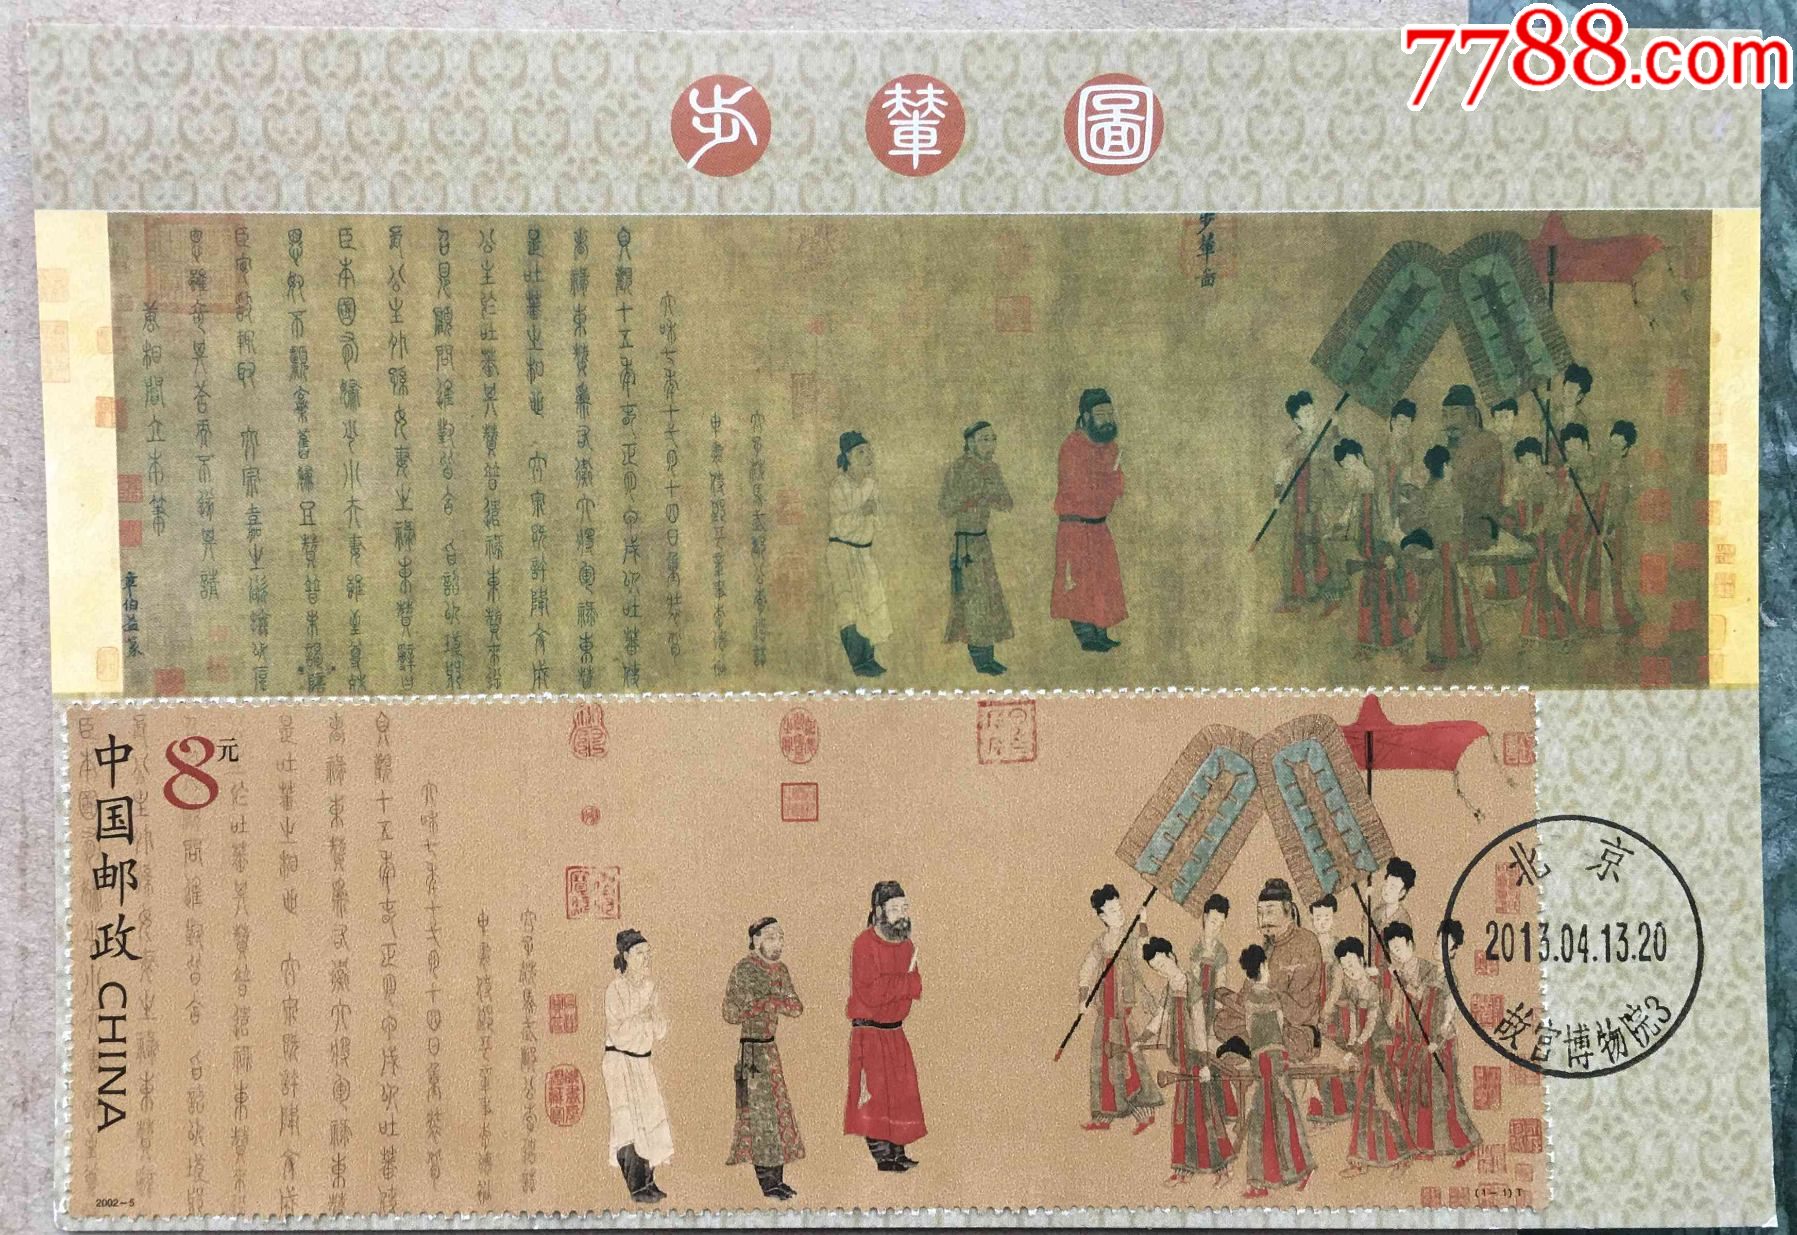 2002年古画步辇图纪念邮票小型张故宫博物馆首日戳极限片